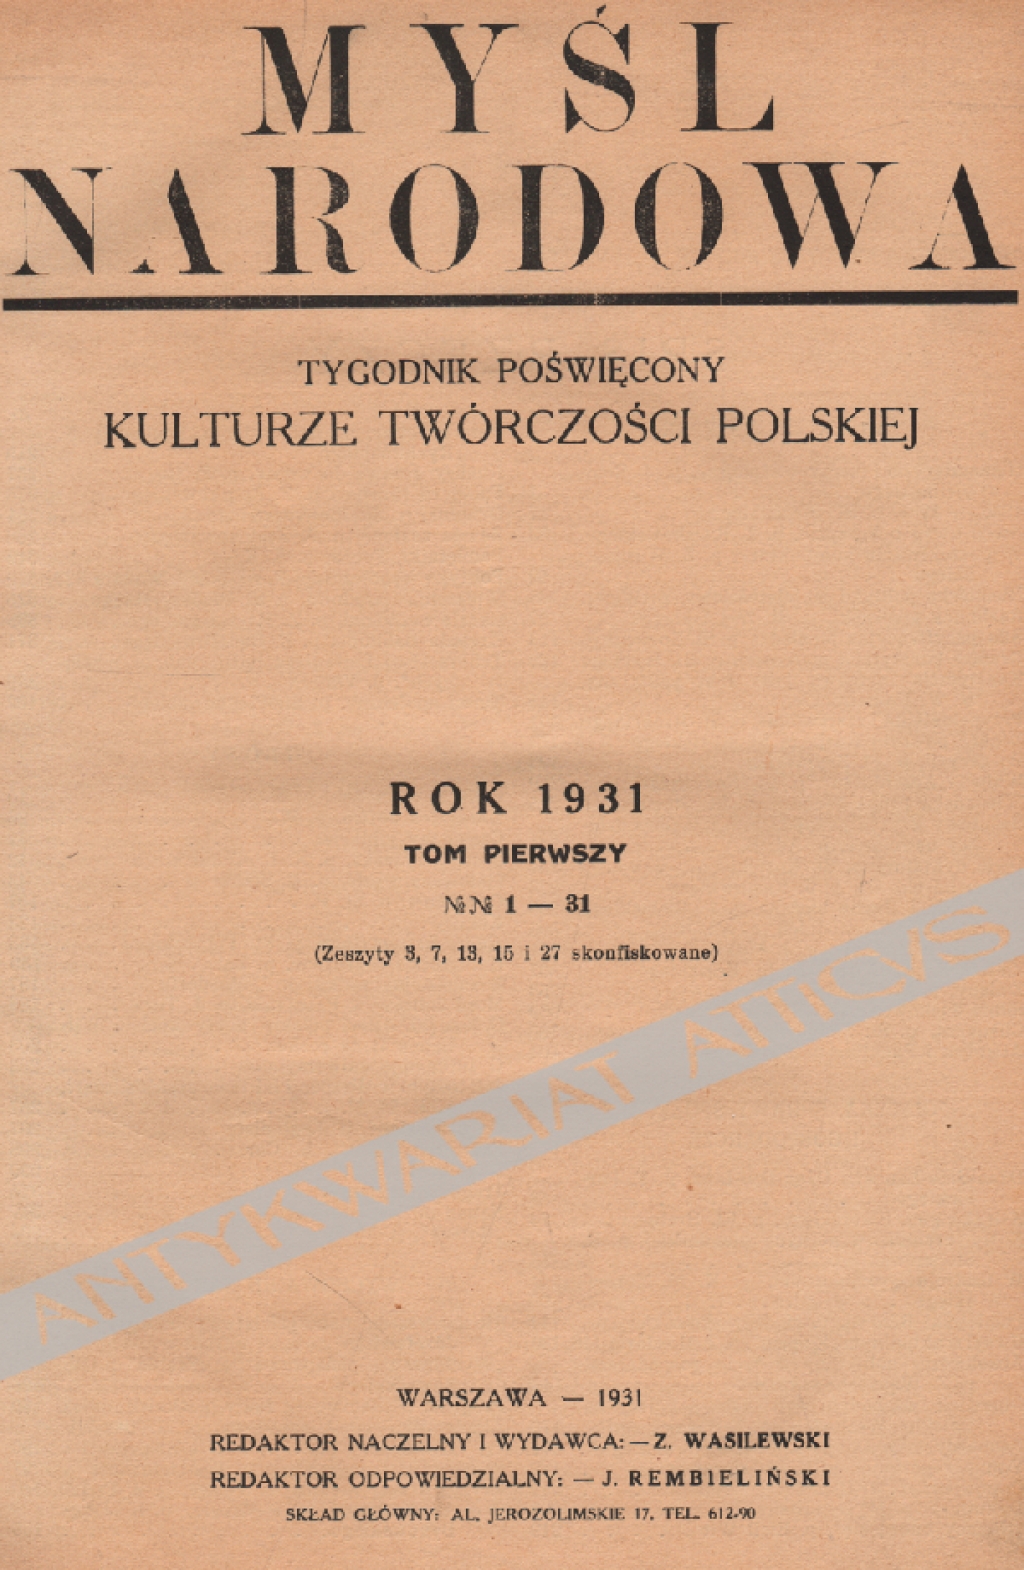 Myśl Narodowa. Tygodnik poświęcony kulturze twórczości polskiej. Rok 1931, t. I: nr 1-31 [brak nr 1]